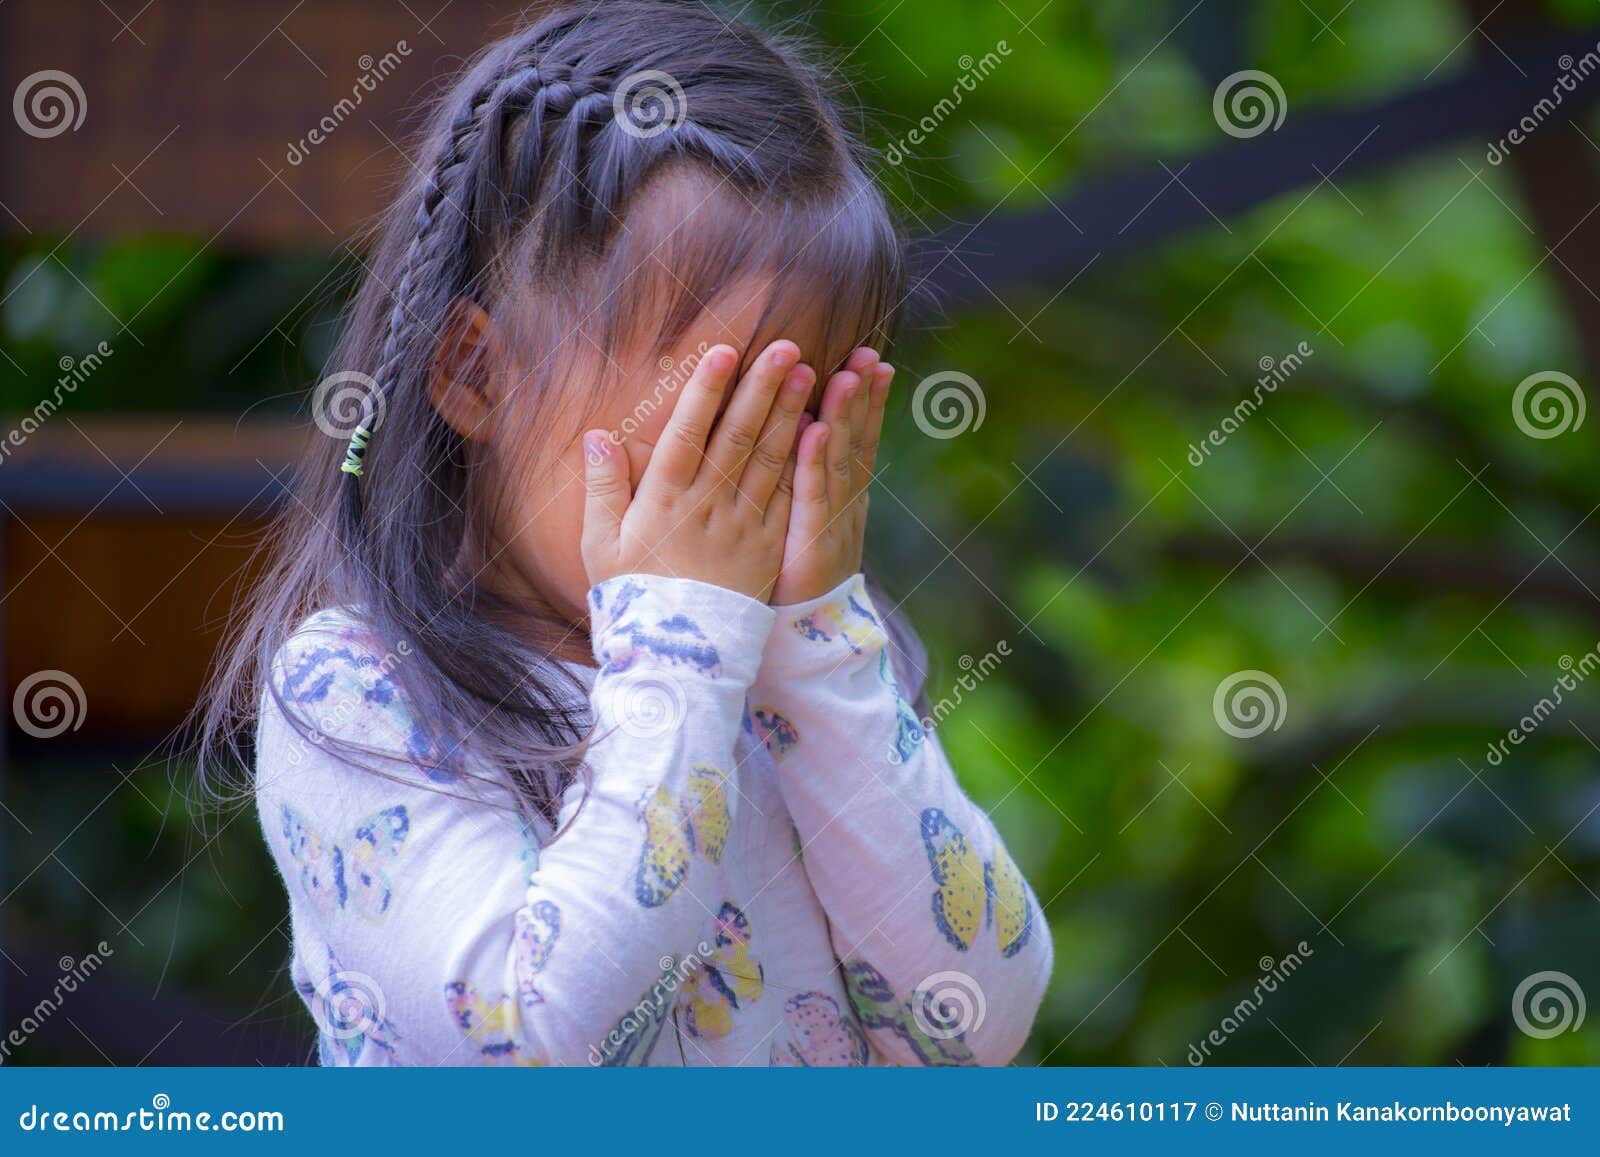 thai little girl praying, crying, hopelessness, despair or prayer